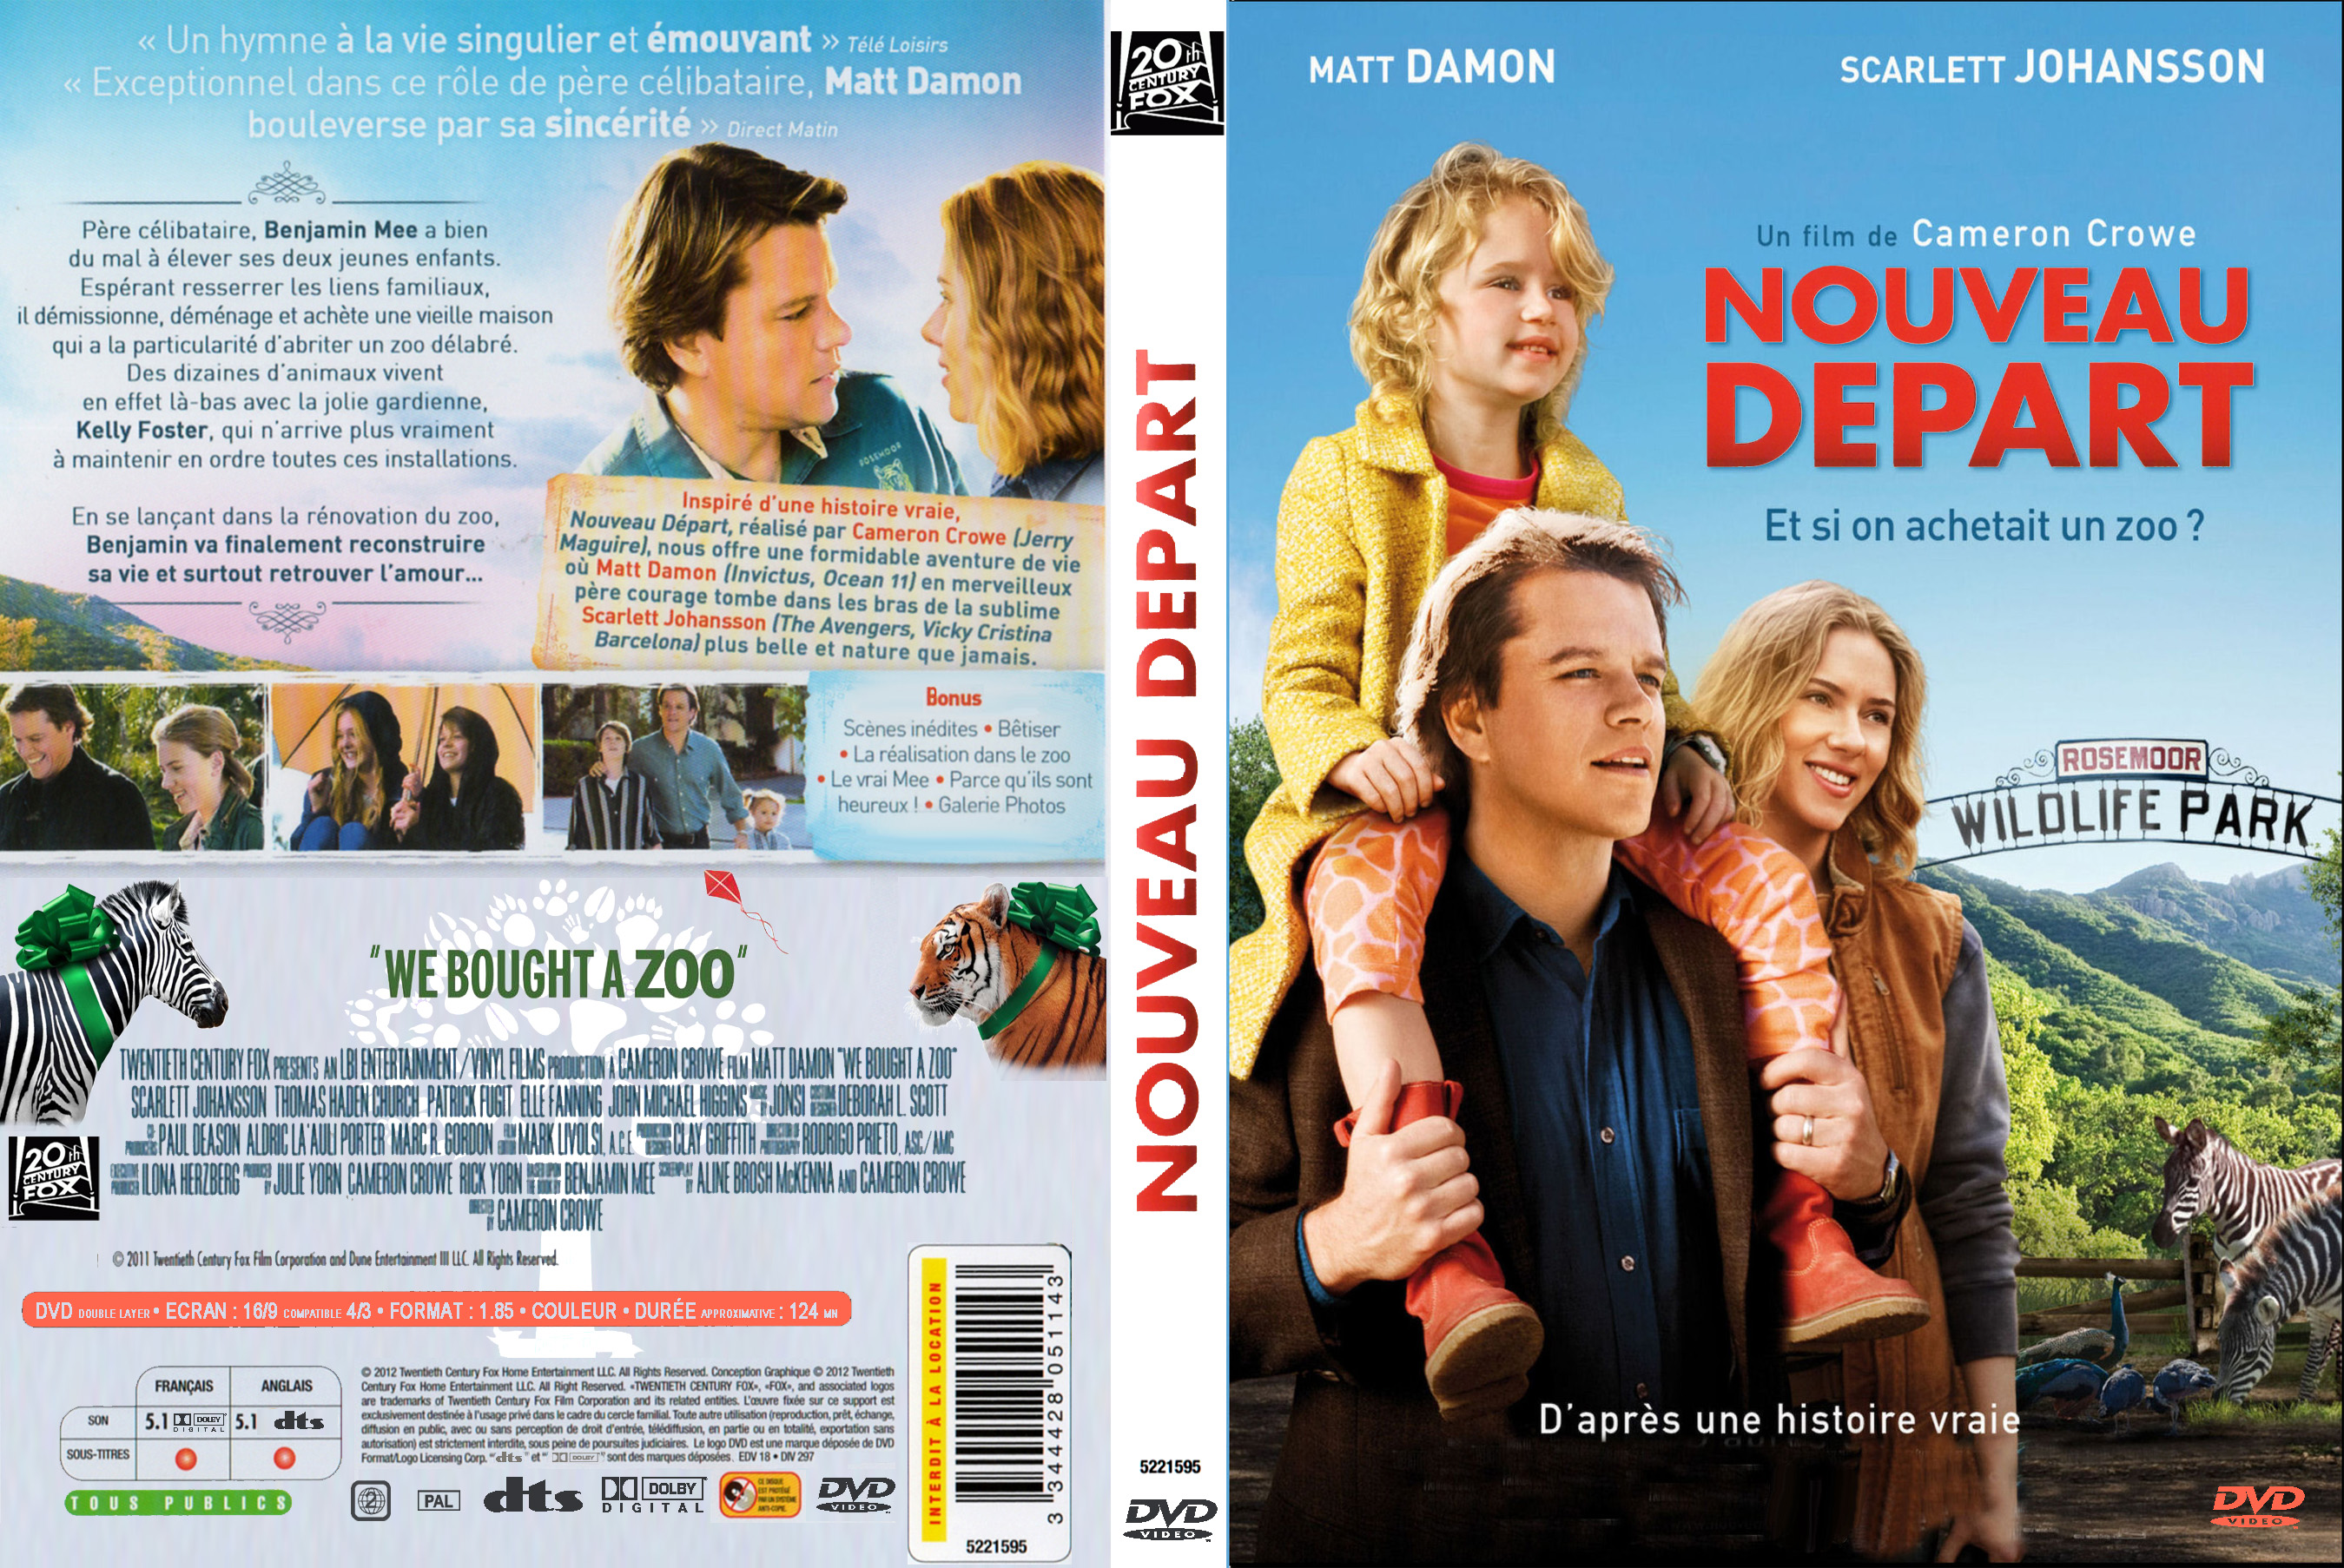 Jaquette DVD Nouveau Dpart custom v2